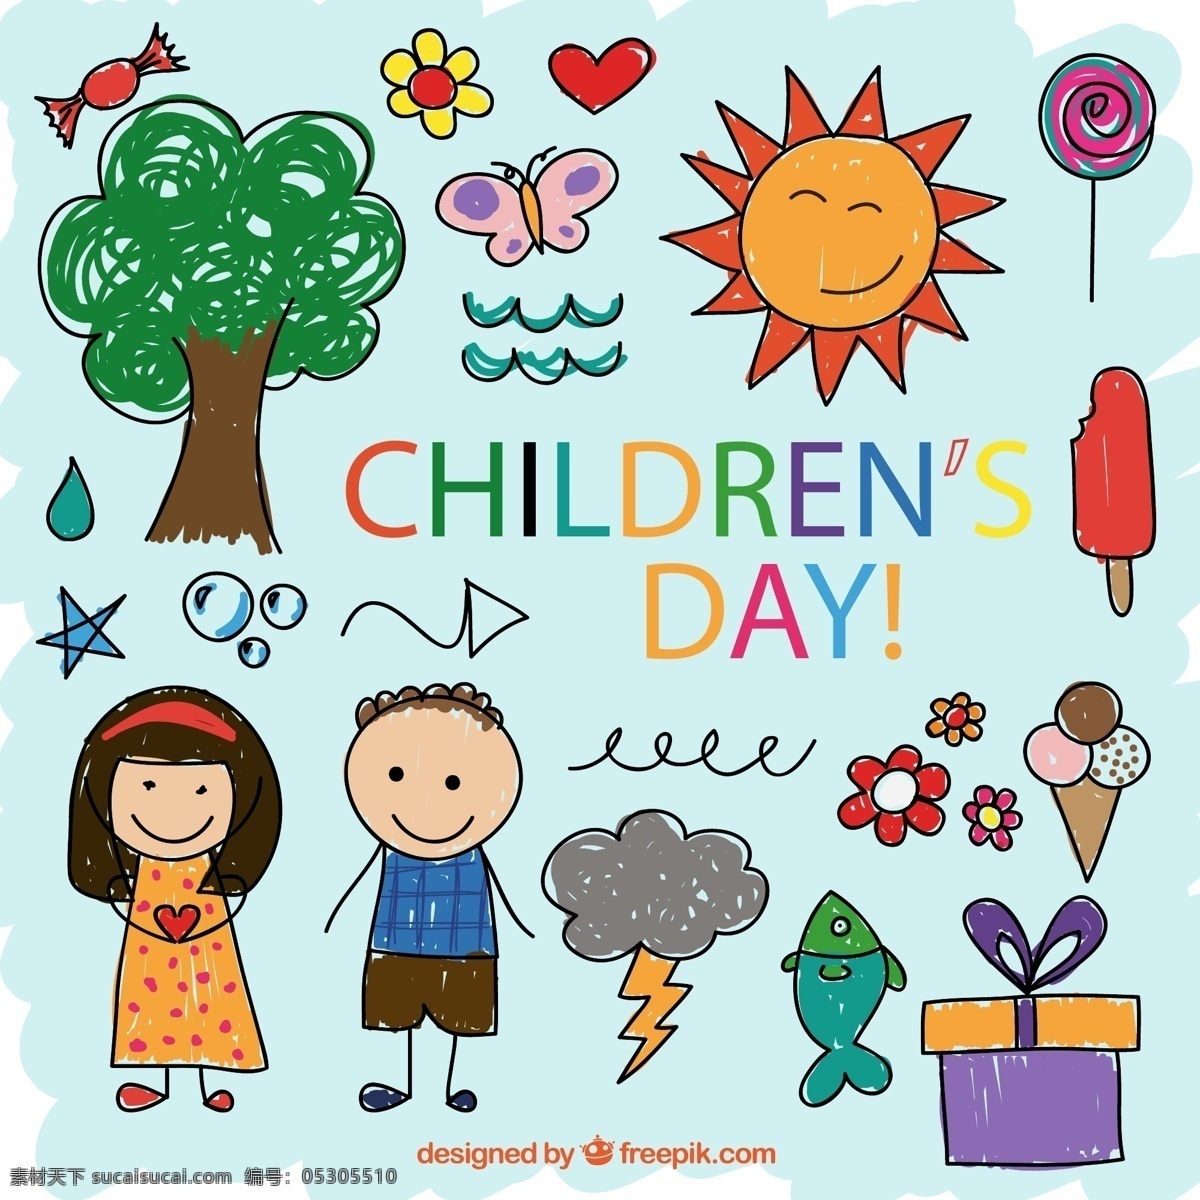 彩绘 儿童节 元素 树木 蝴蝶 太阳 棒棒糖 孩子 儿童 矢量 高清图片